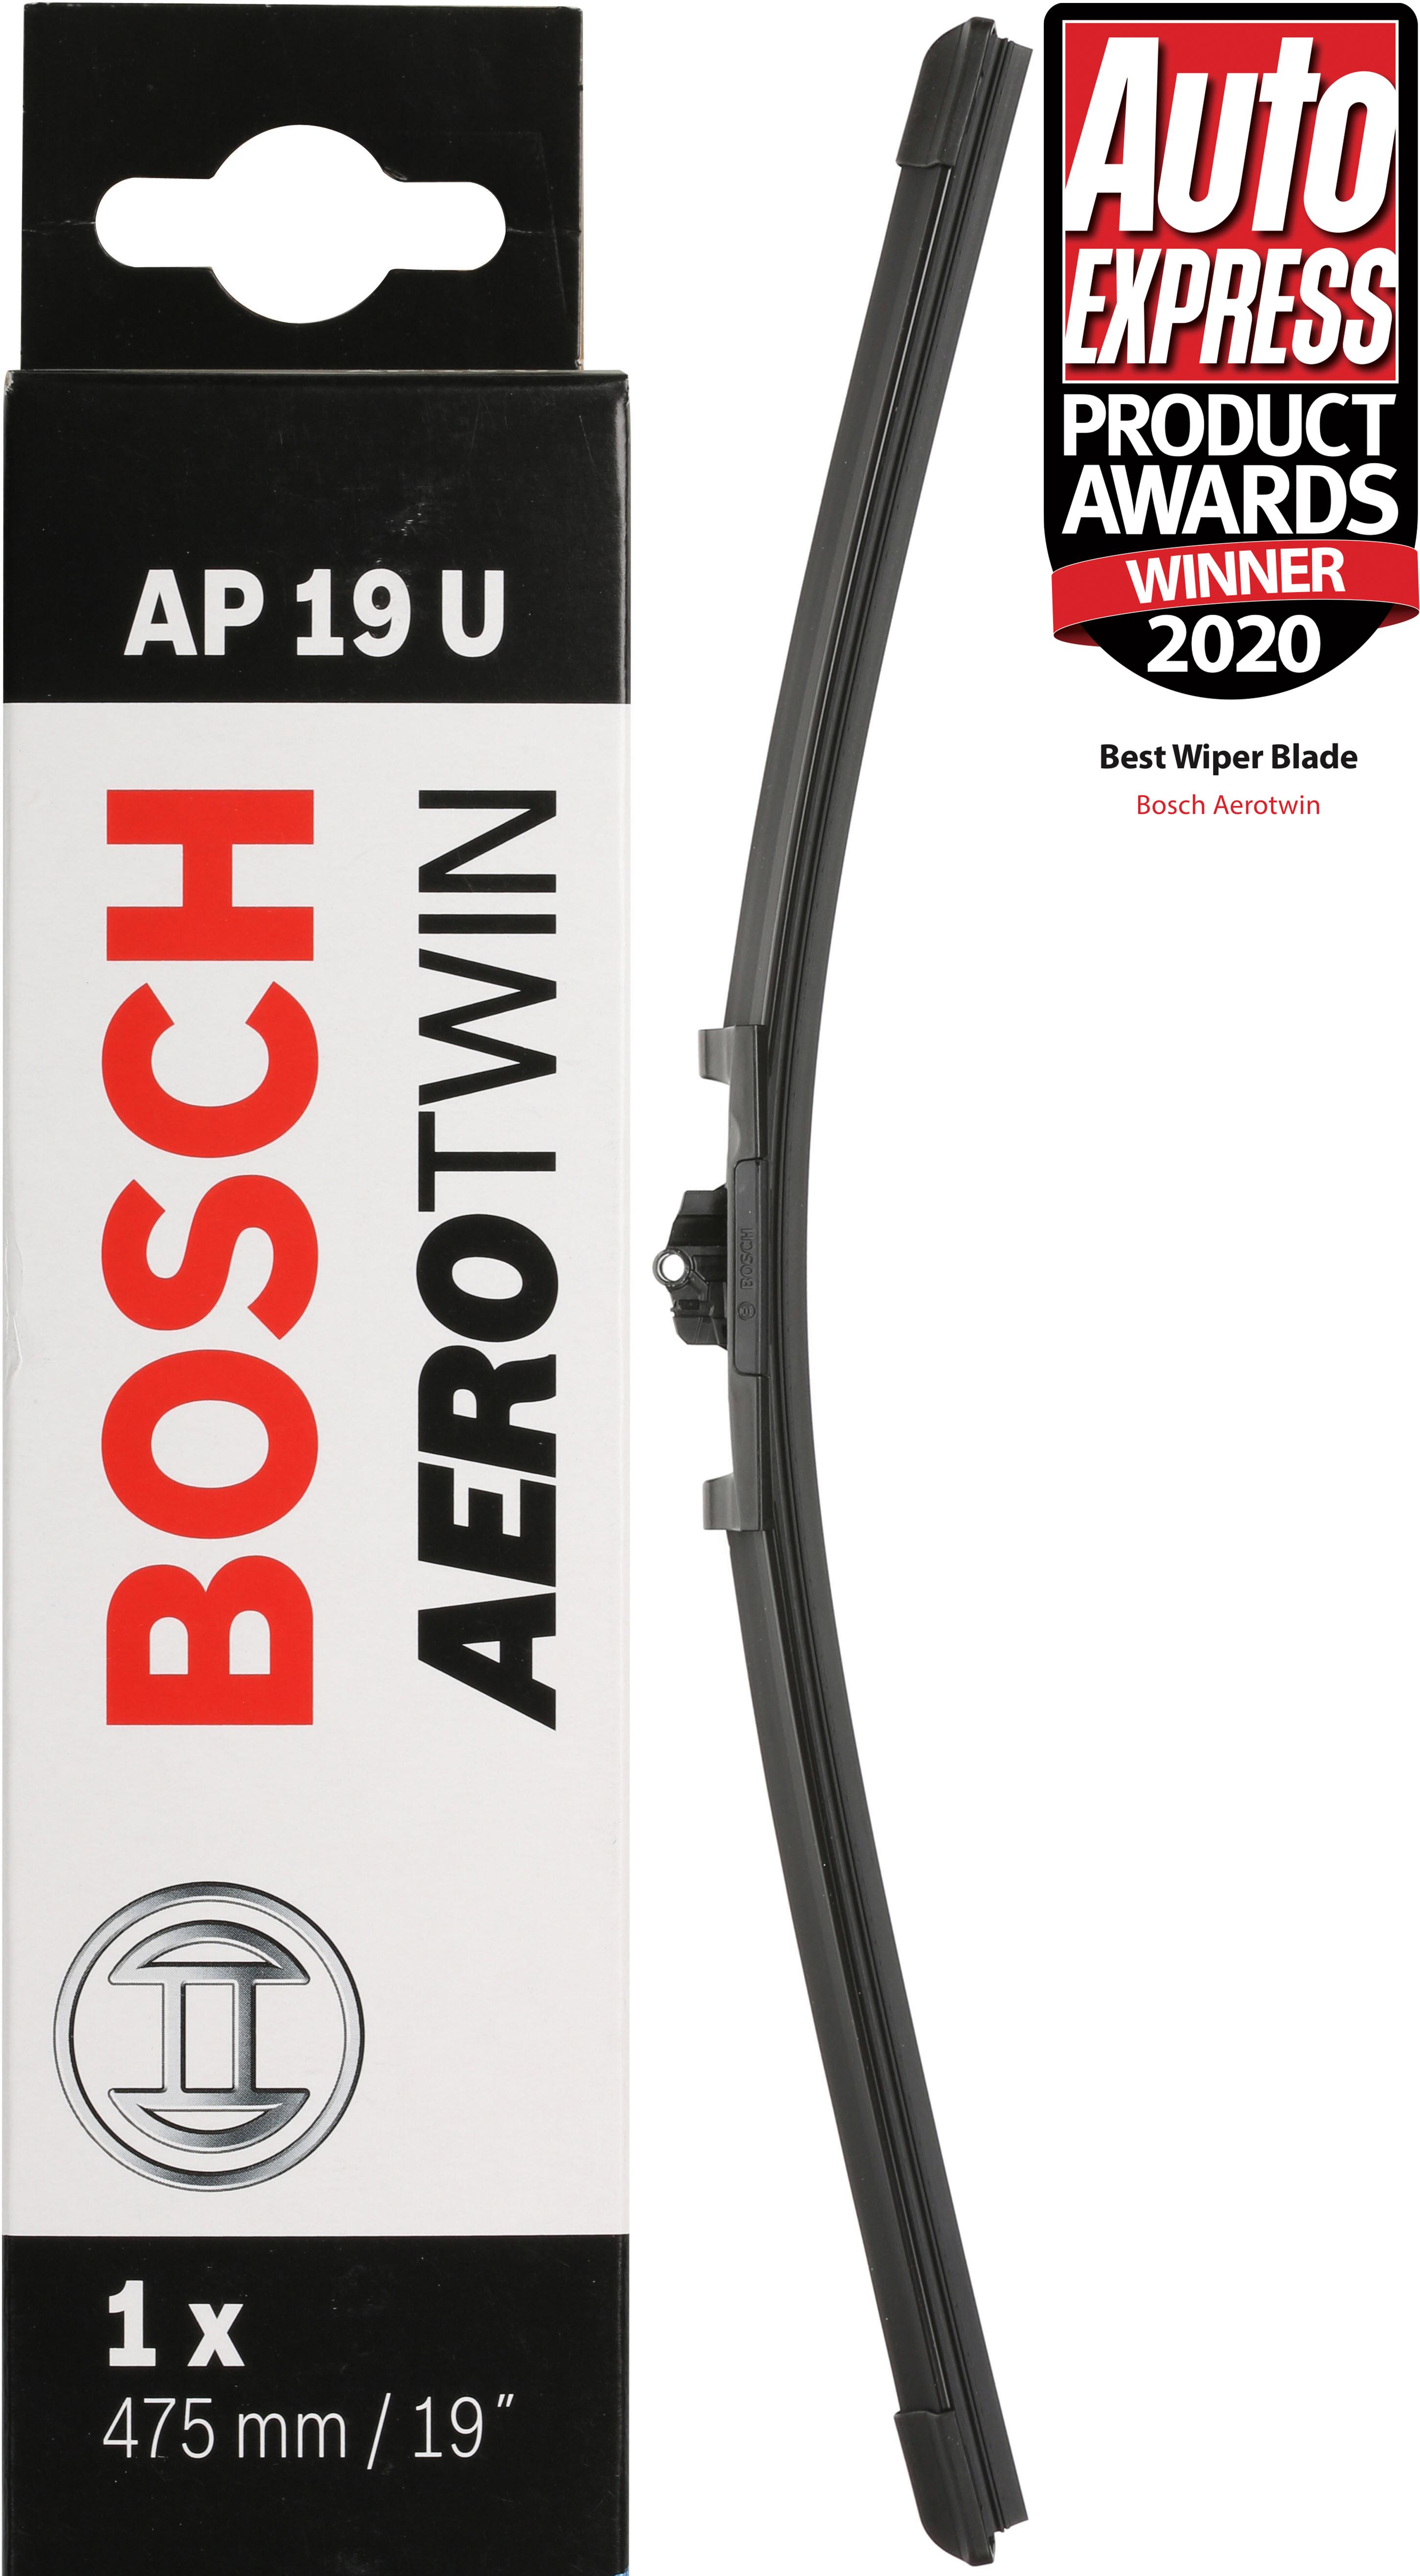 Bosch Aerotwin Plus Essuie-Glace Blade 19" Inch Flat Multi Clip AP19U AERO 